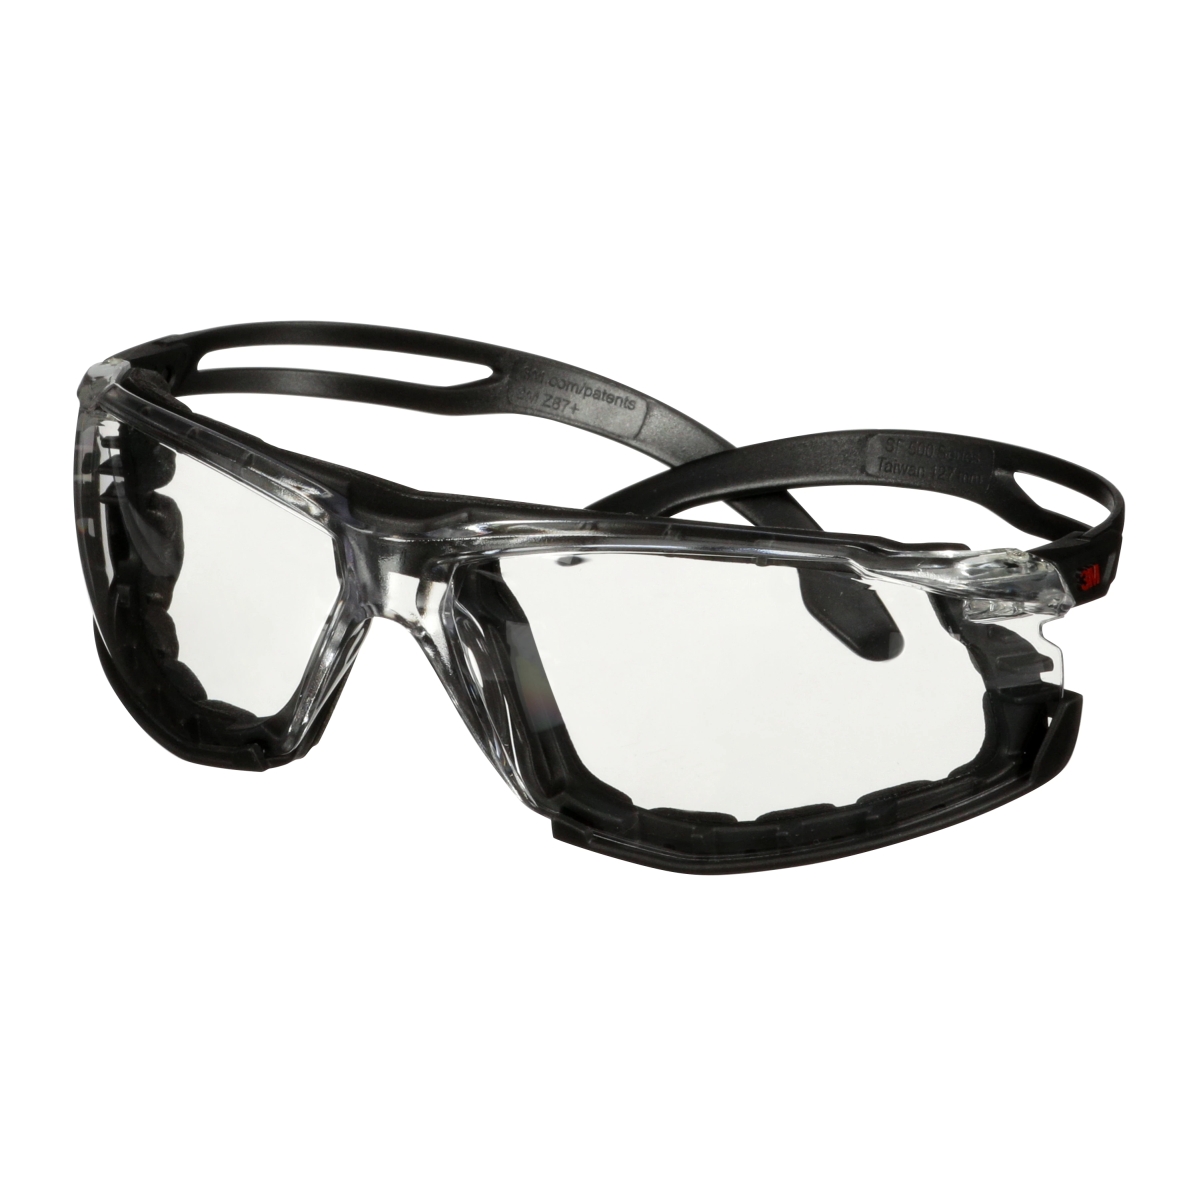 Gafas de protección 3M SecureFit 500, con montura de espuma, patillas negras, tratamiento Scotchgard antirrayas y antivaho (K